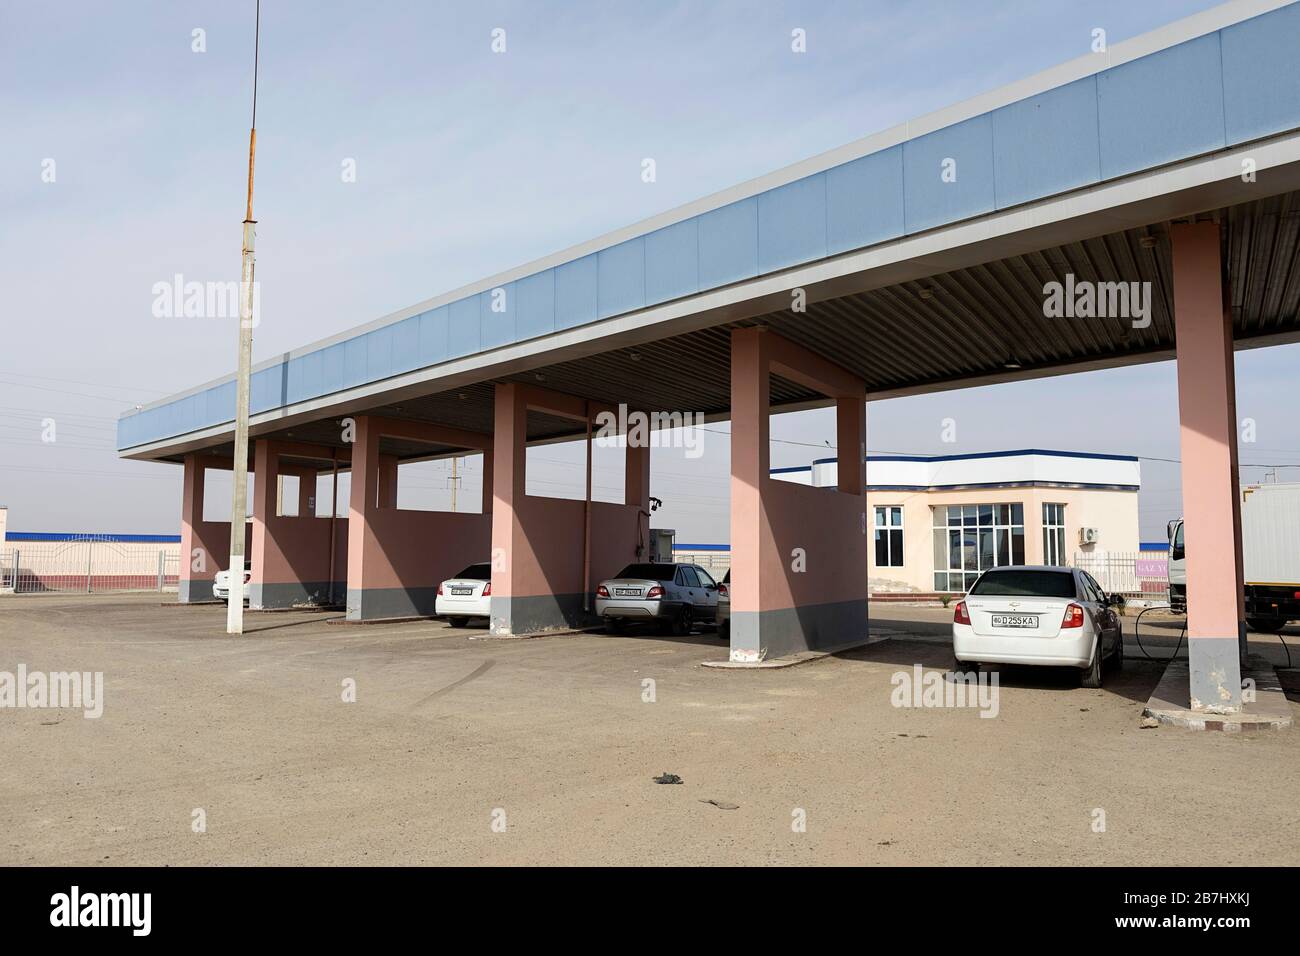 Gas station, Uzbekistan Stock Photo